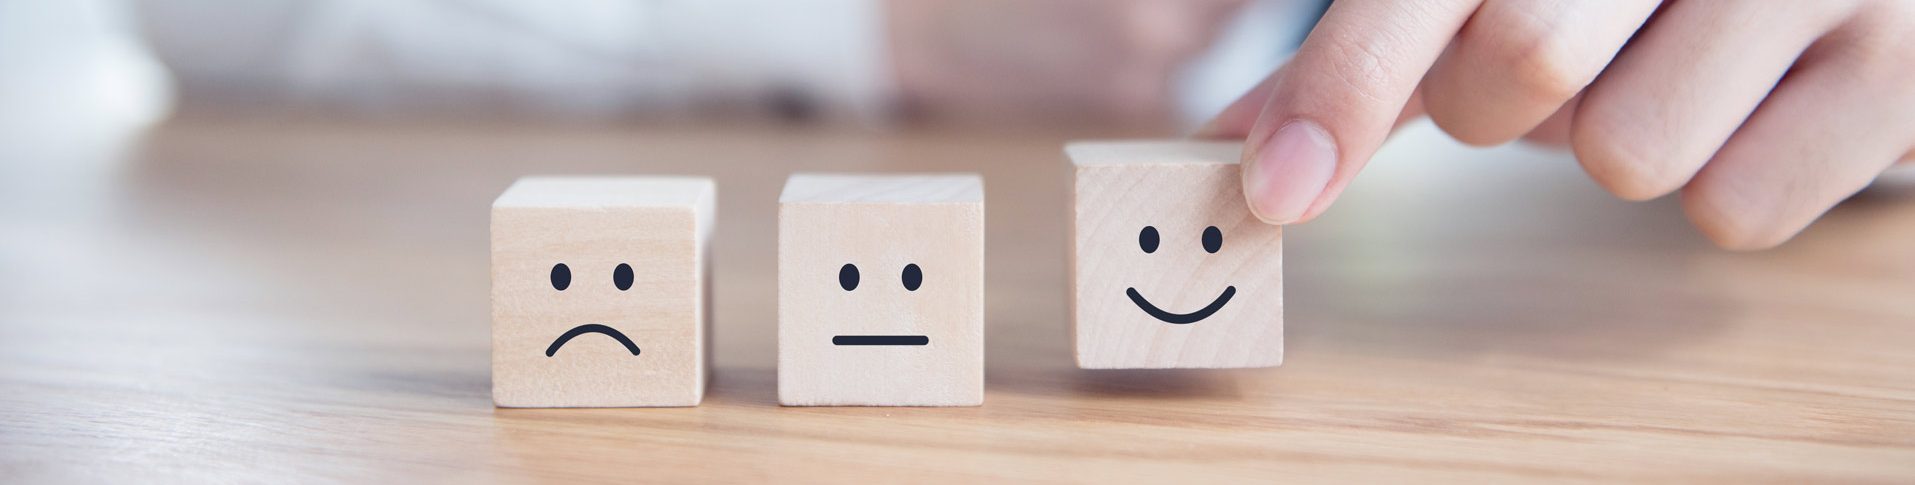 3 différents émotions représentatif d'une personne cherchant comment améliorer sa cote de crédit